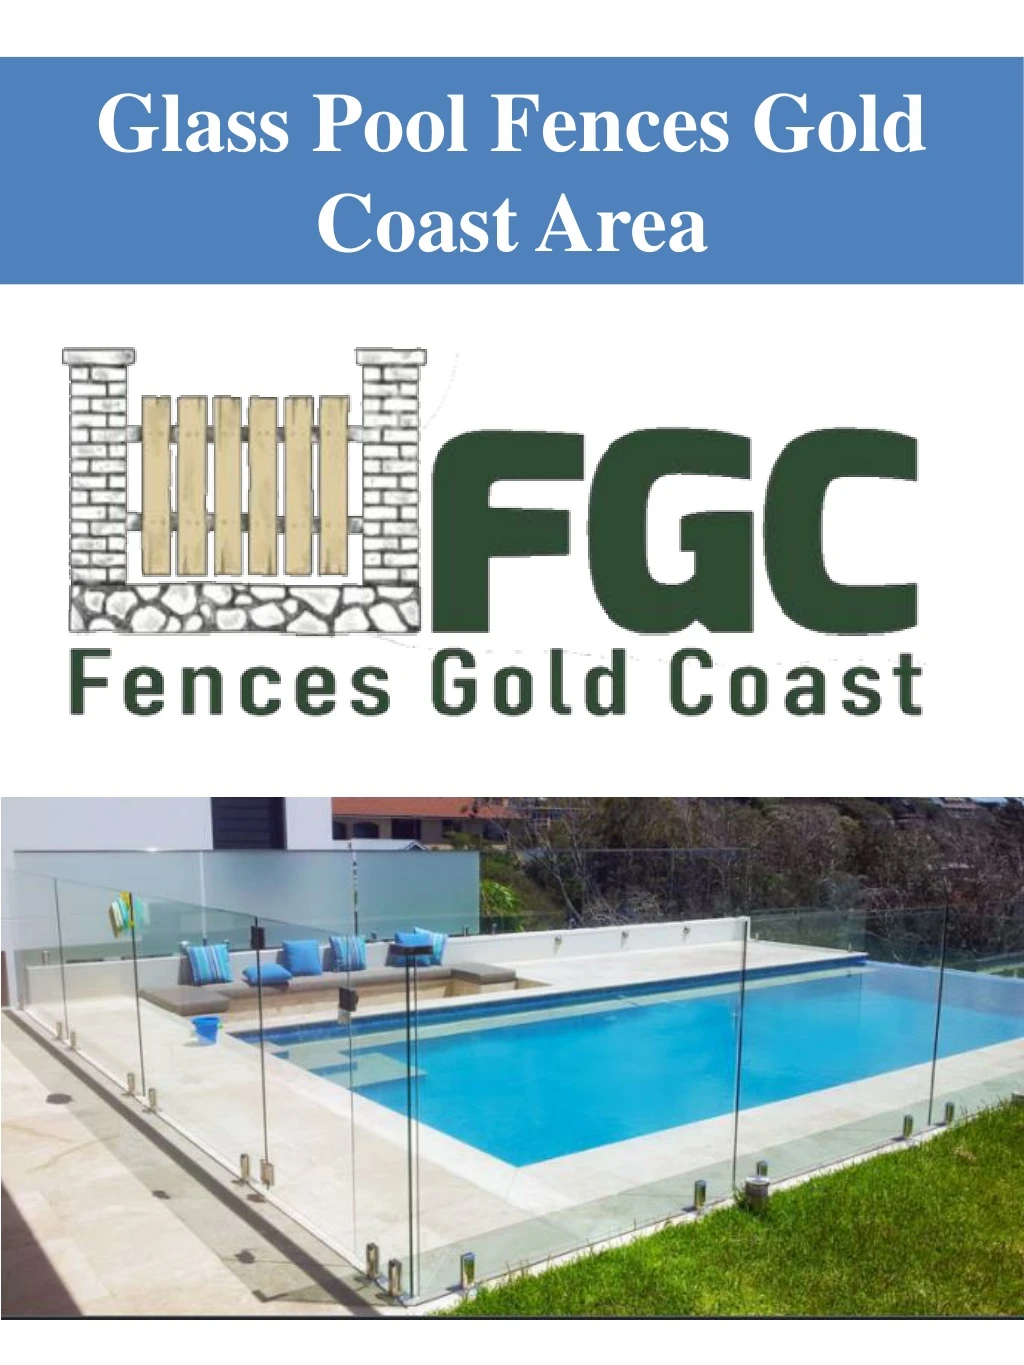 glass pool fences gold coast area